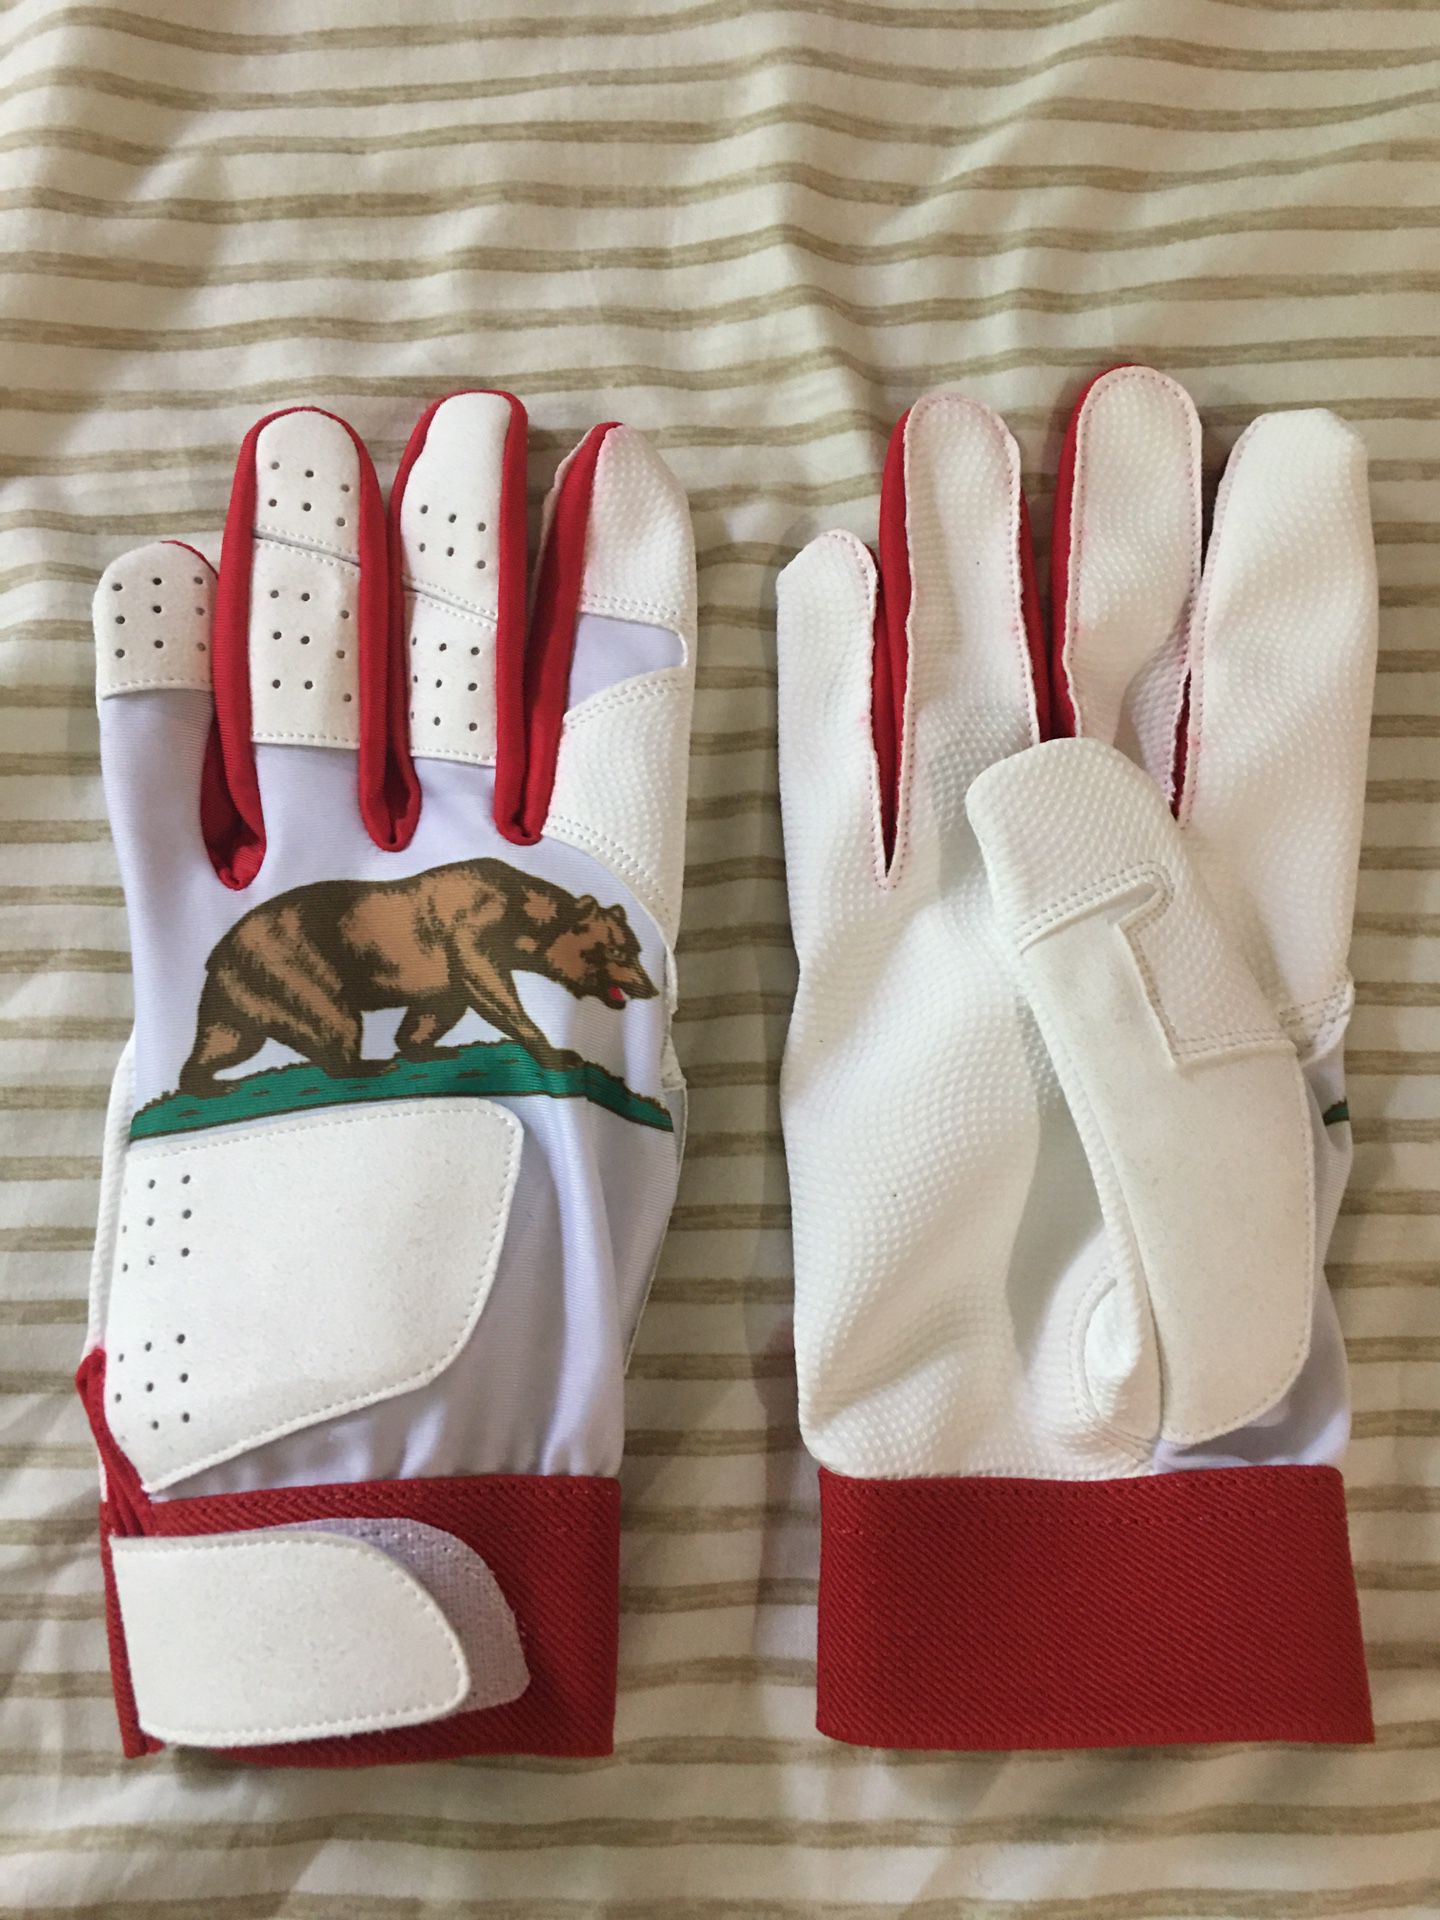 Hand Stitched Baseball/Softball Gloves - $35